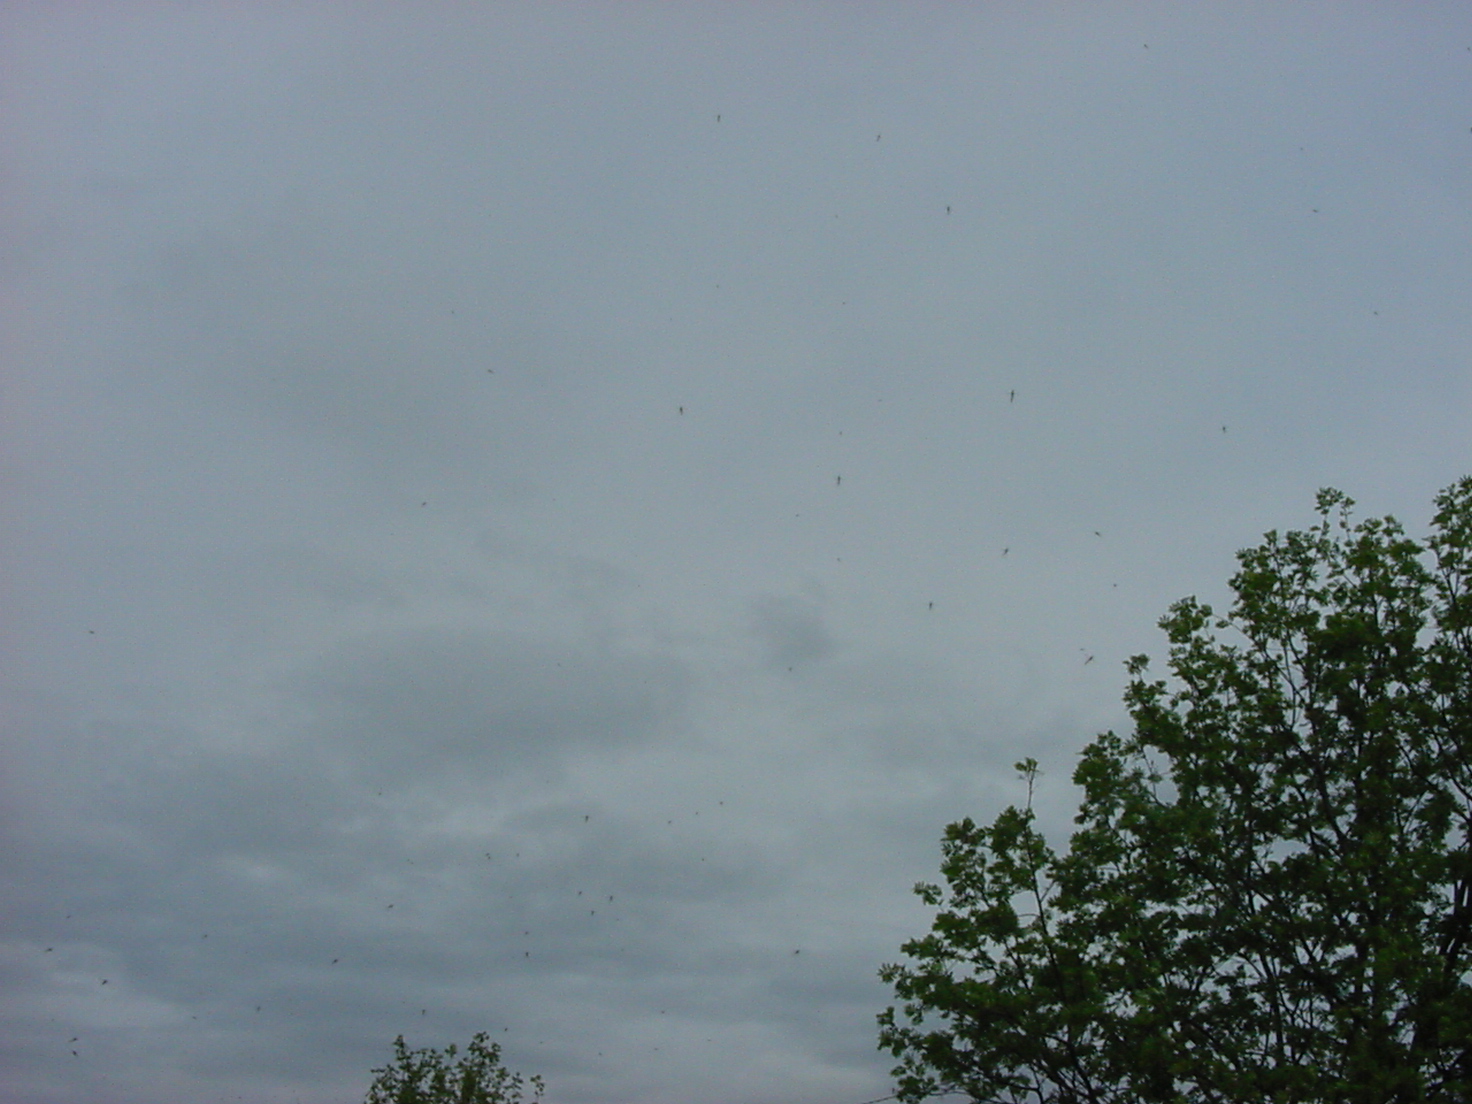 Parvi sudenkorennon näköisiä hyönteisiä lennossa, pilvistä taivasta vasten kuvattuna. Vasemmalla katuvalaisin, josta lähtee ilmajohdin kuvan vasenta yläkulmaa kohti.